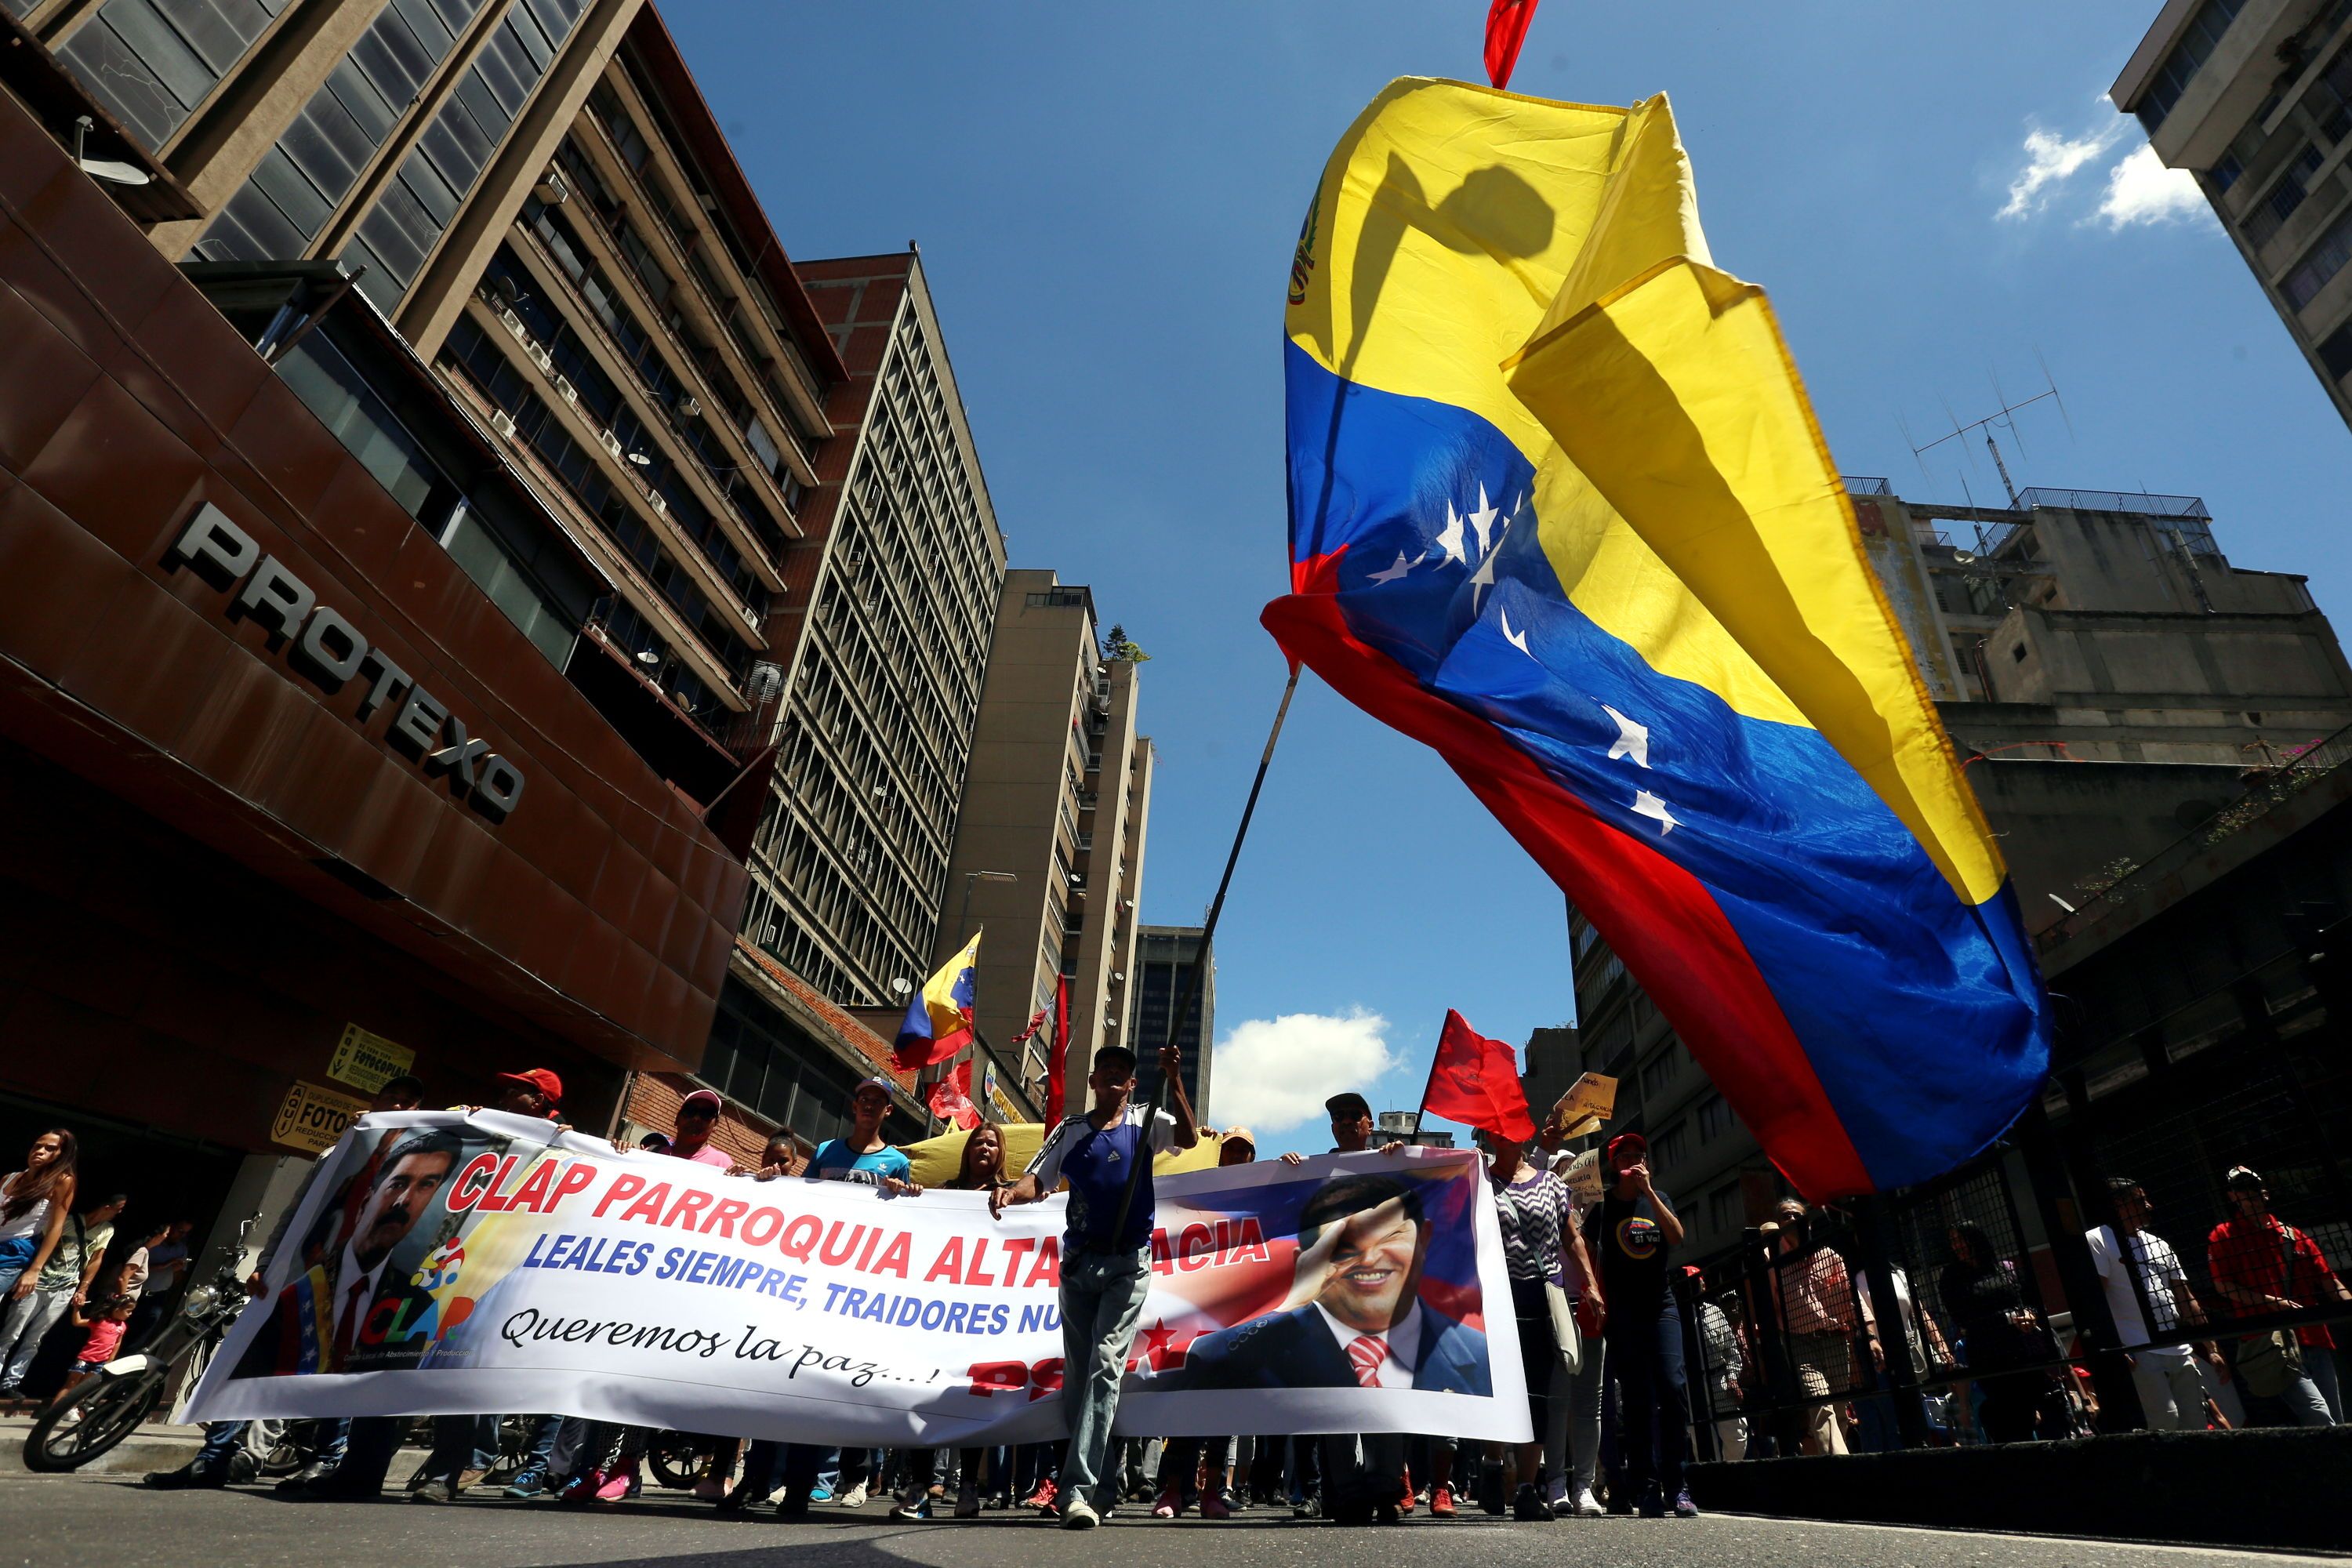 Asimismo, tanto el pueblo bolivariano como autoridades venezolanas han denunciado que EE.UU lidera una feroz campaña para derrocar al Gobierno democrático de Venezuela.